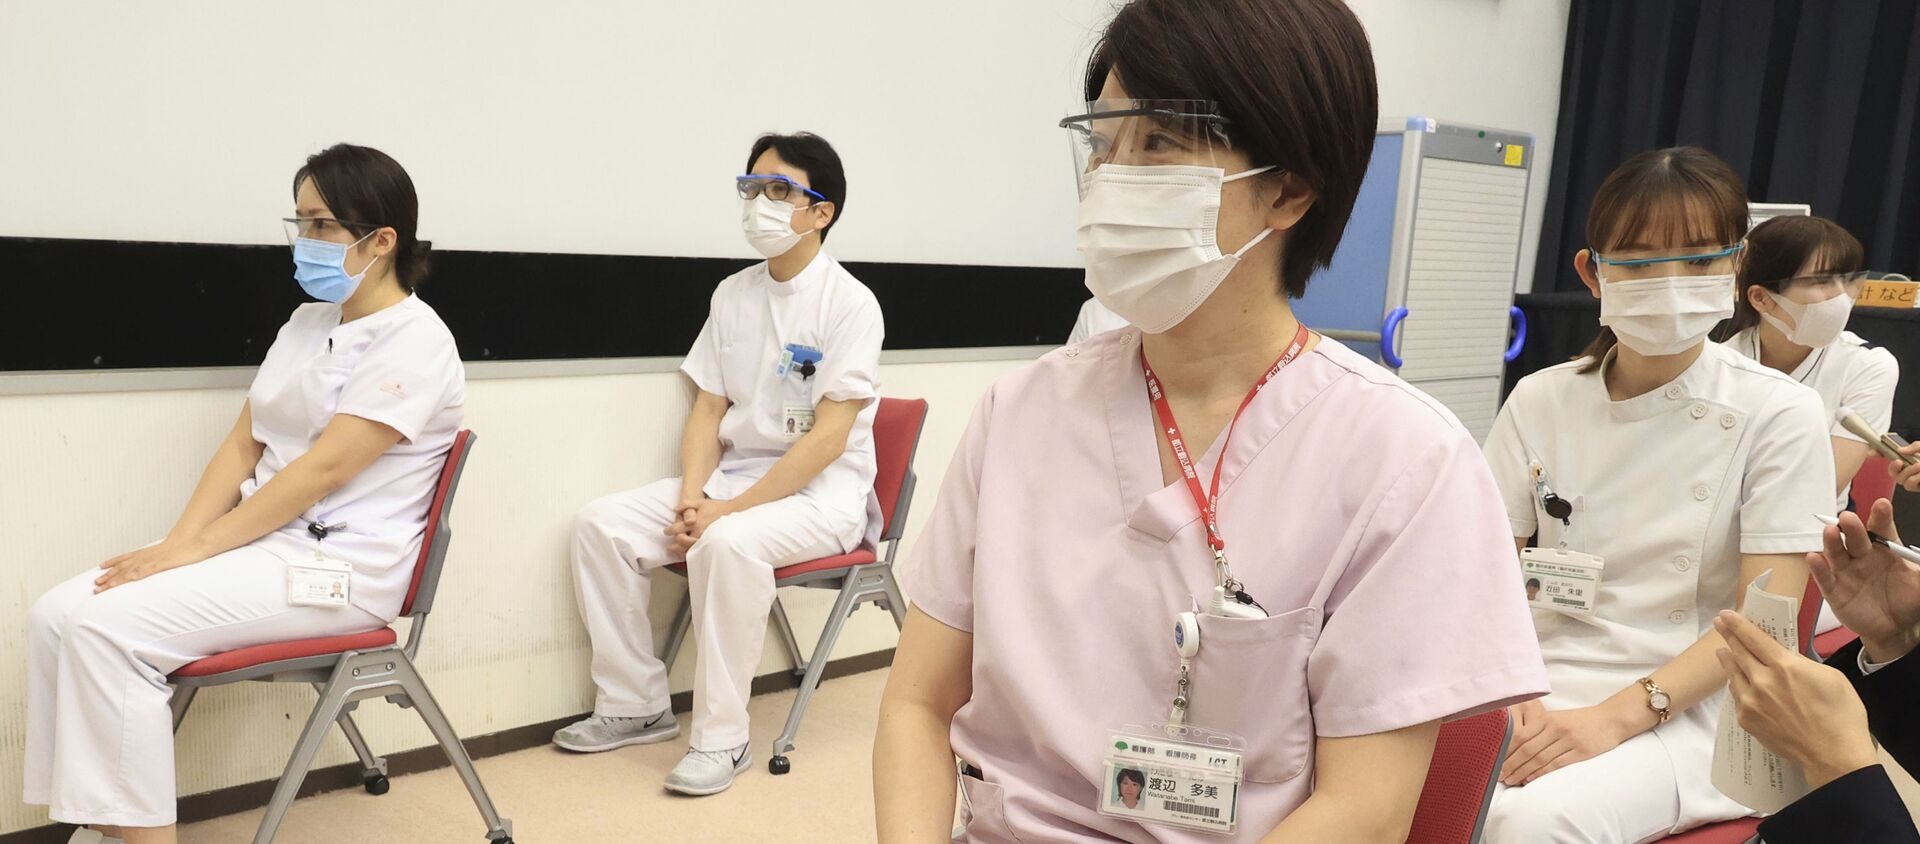 Медицинские работники после получения дозы вакцины Pfizer от COVID-19 в Токио - Sputnik 日本, 1920, 16.06.2021